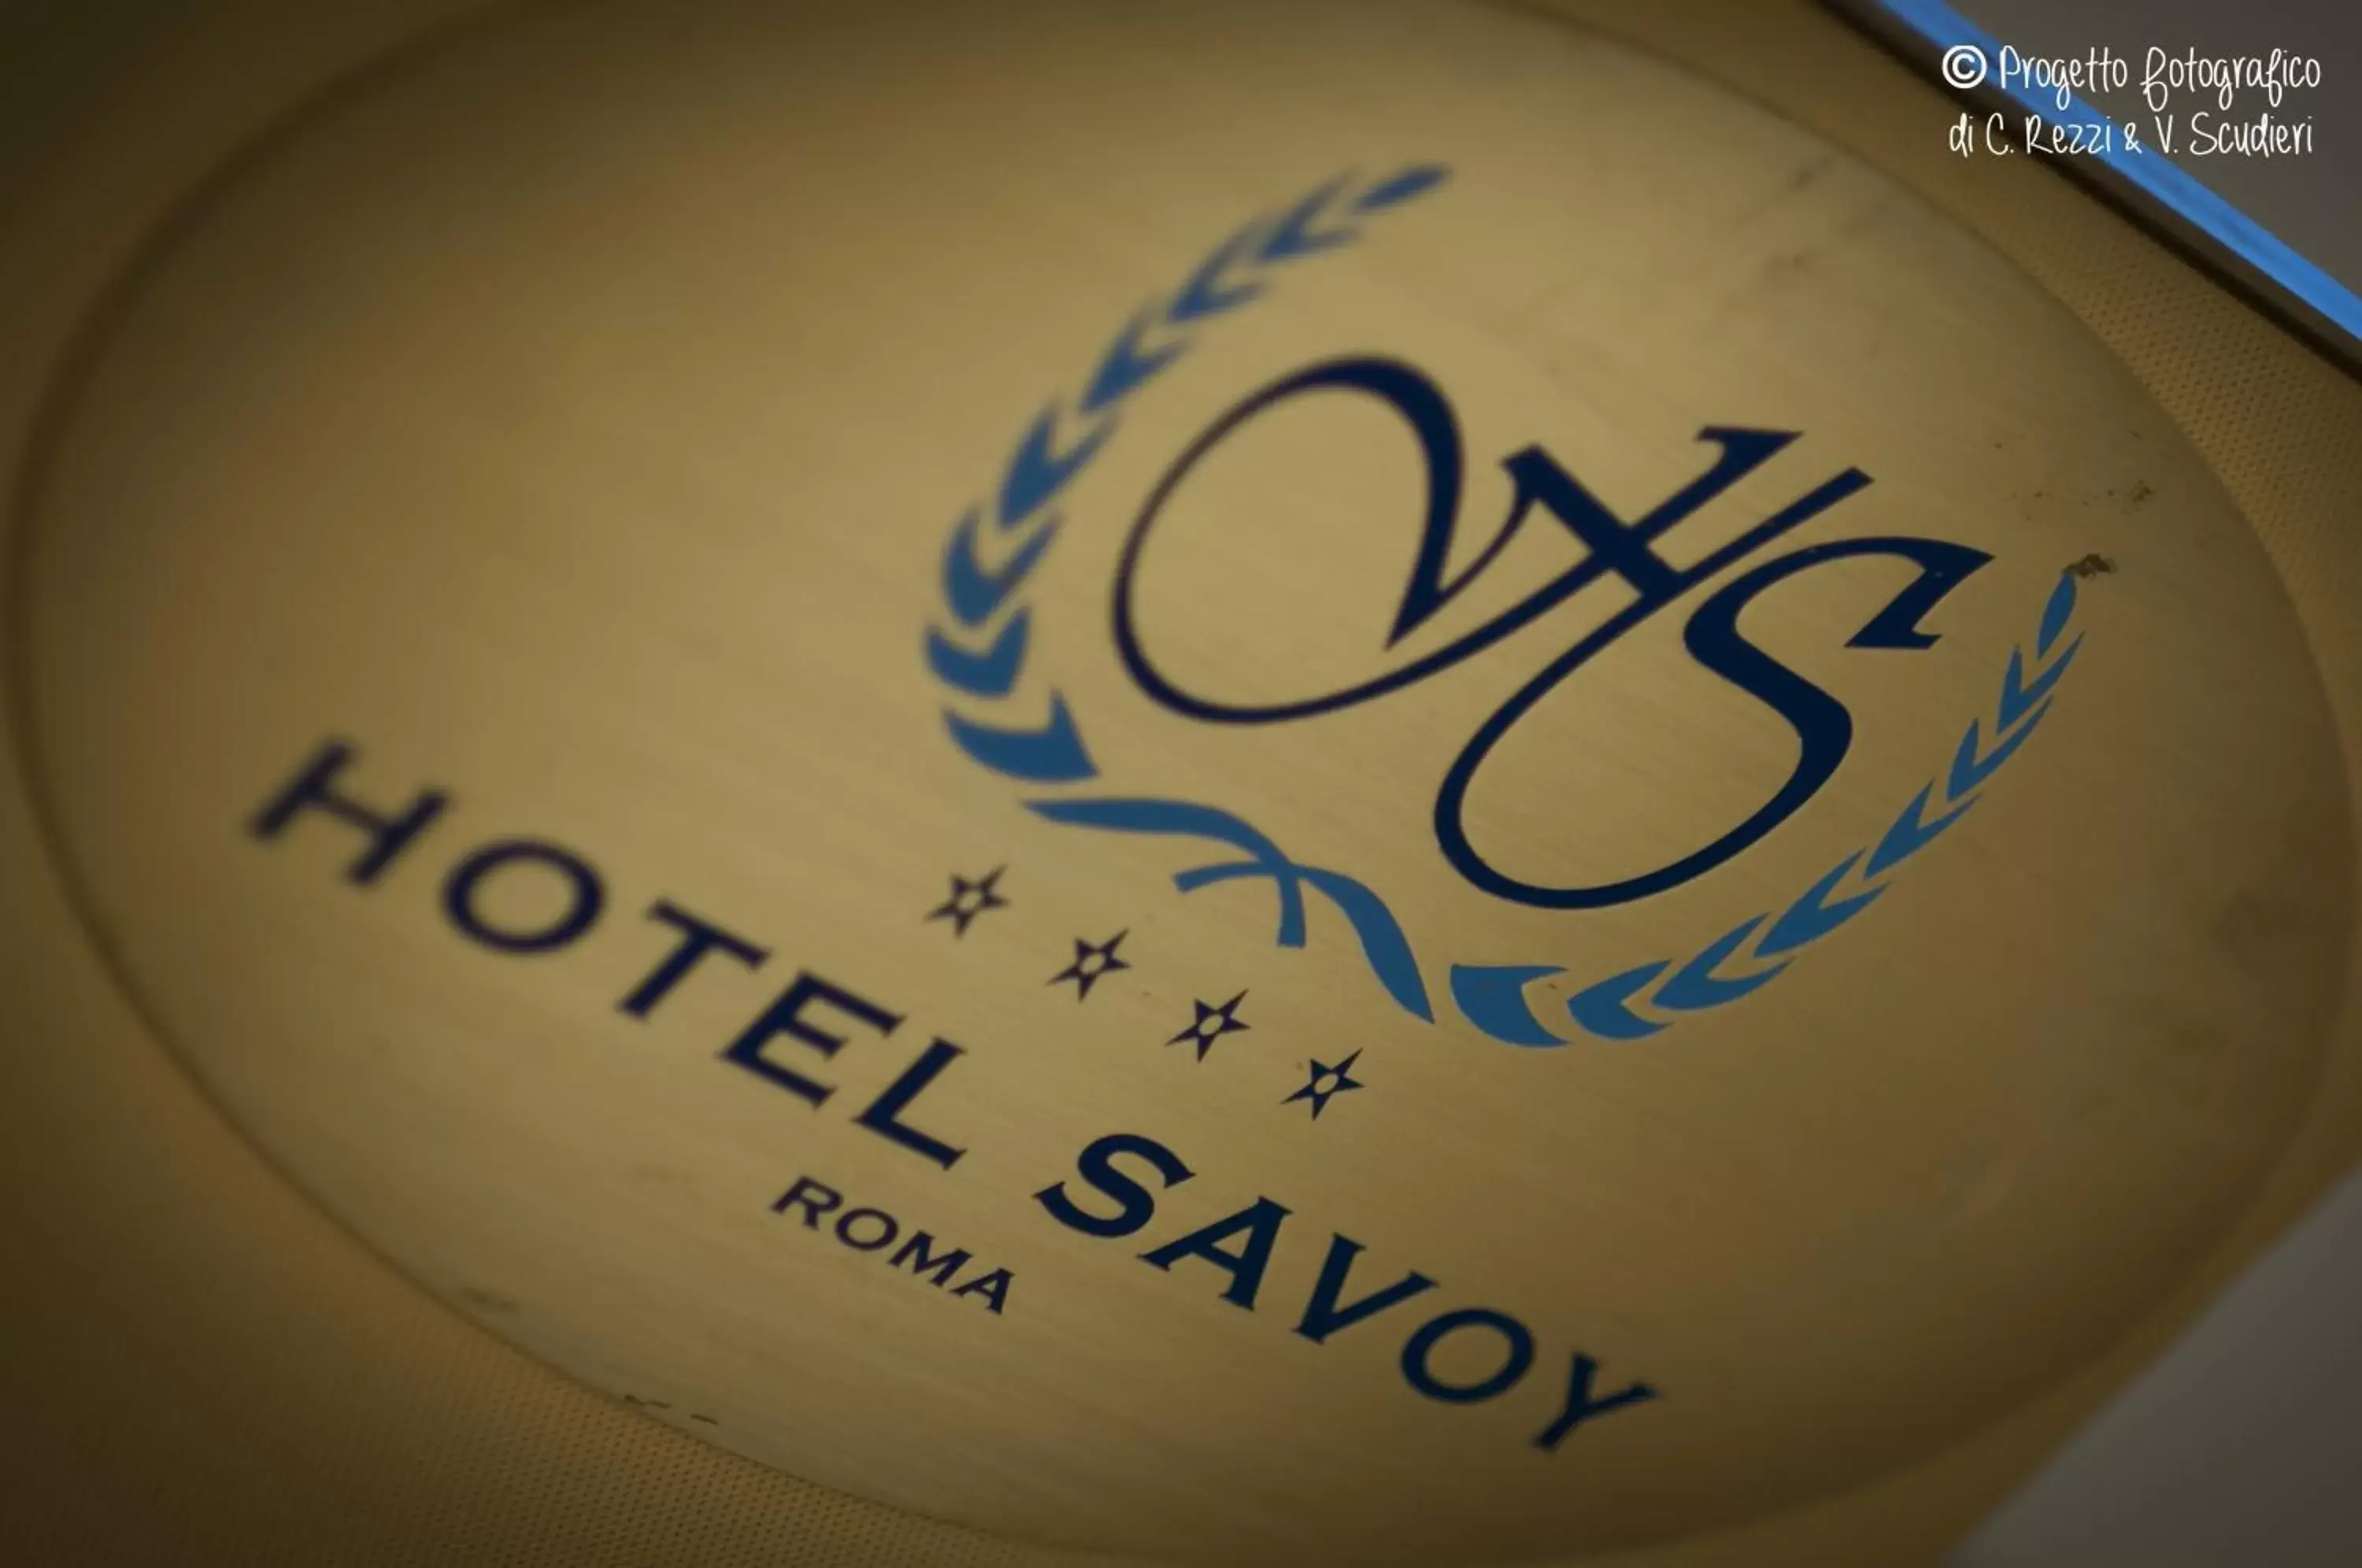 Decorative detail in Hotel Savoy